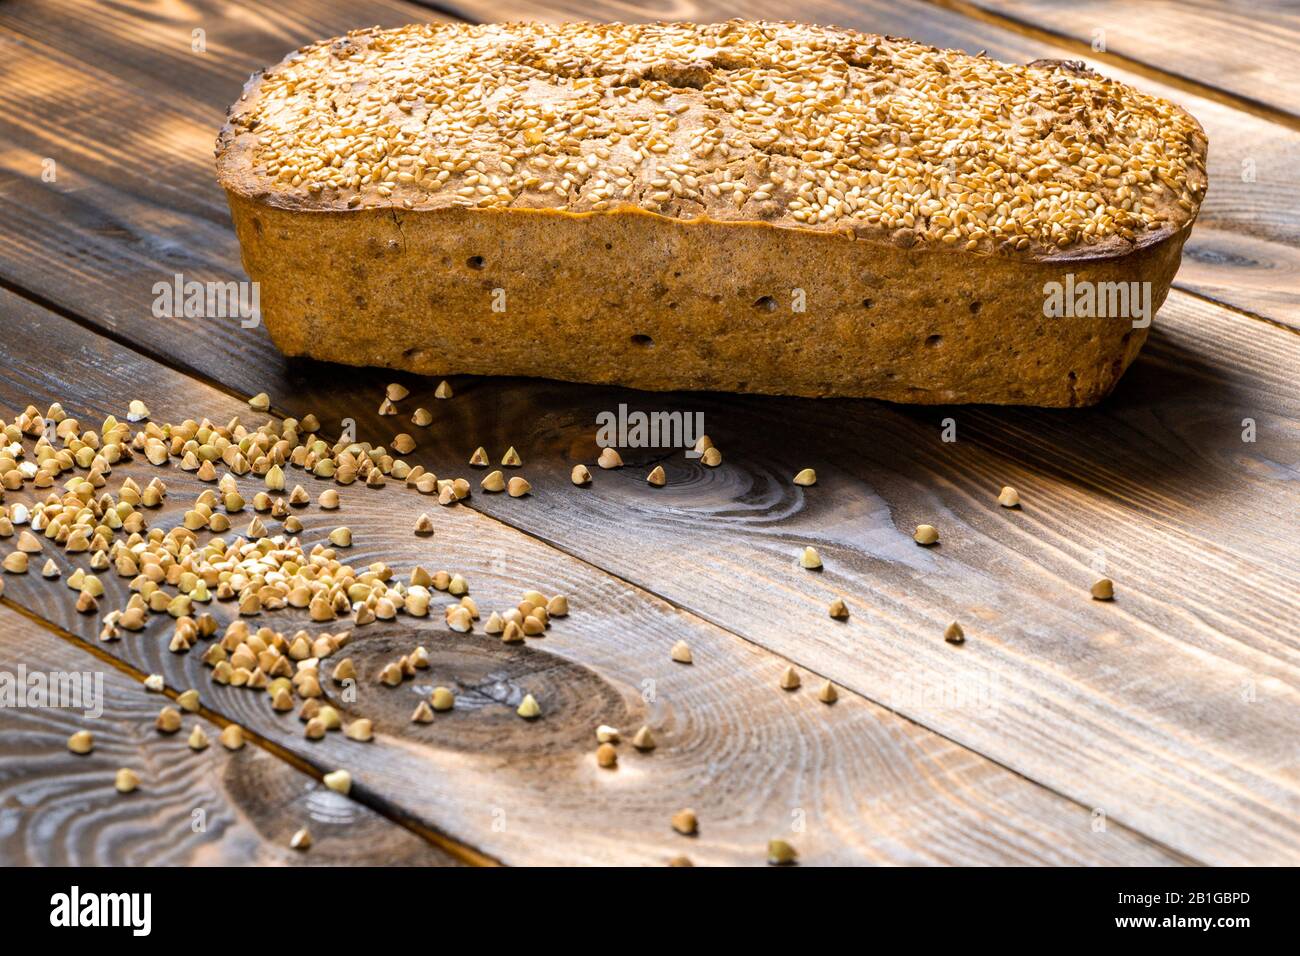 Le pain de sarrasin sans gluten avec croûte brune dorée, saupoudrée de graines de sésame, se trouve sur une table en bois. Recette maison saine. Grains de vert Banque D'Images